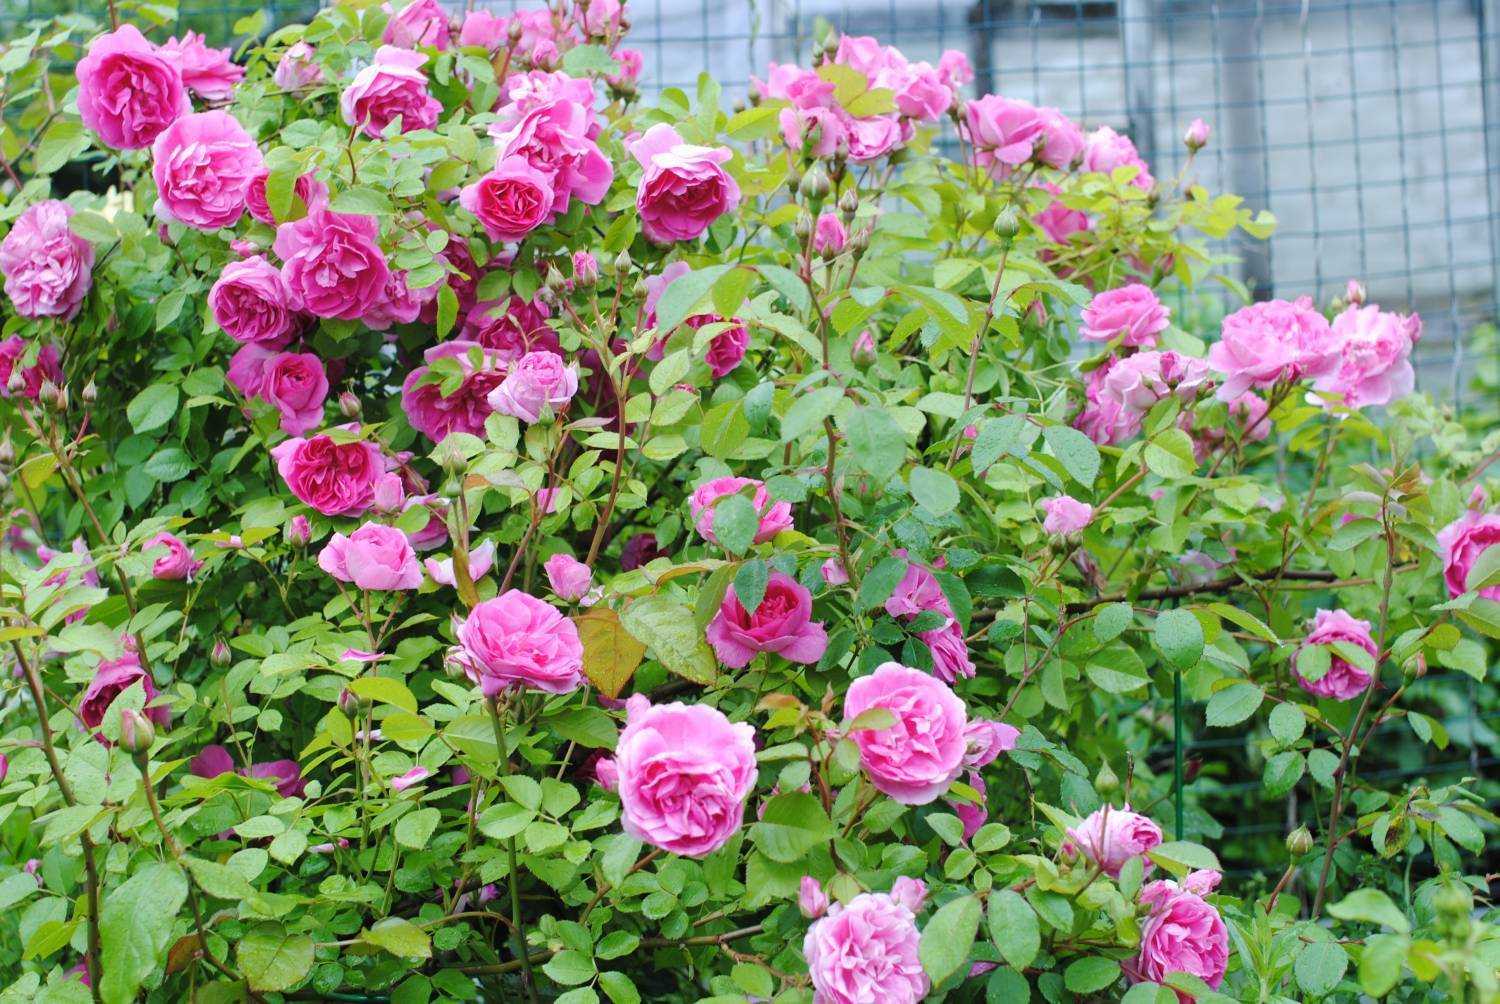 Канадские розы: лучшие сорта канадской селекции, зимостойкие, плетистые, парковые | qlumba.com